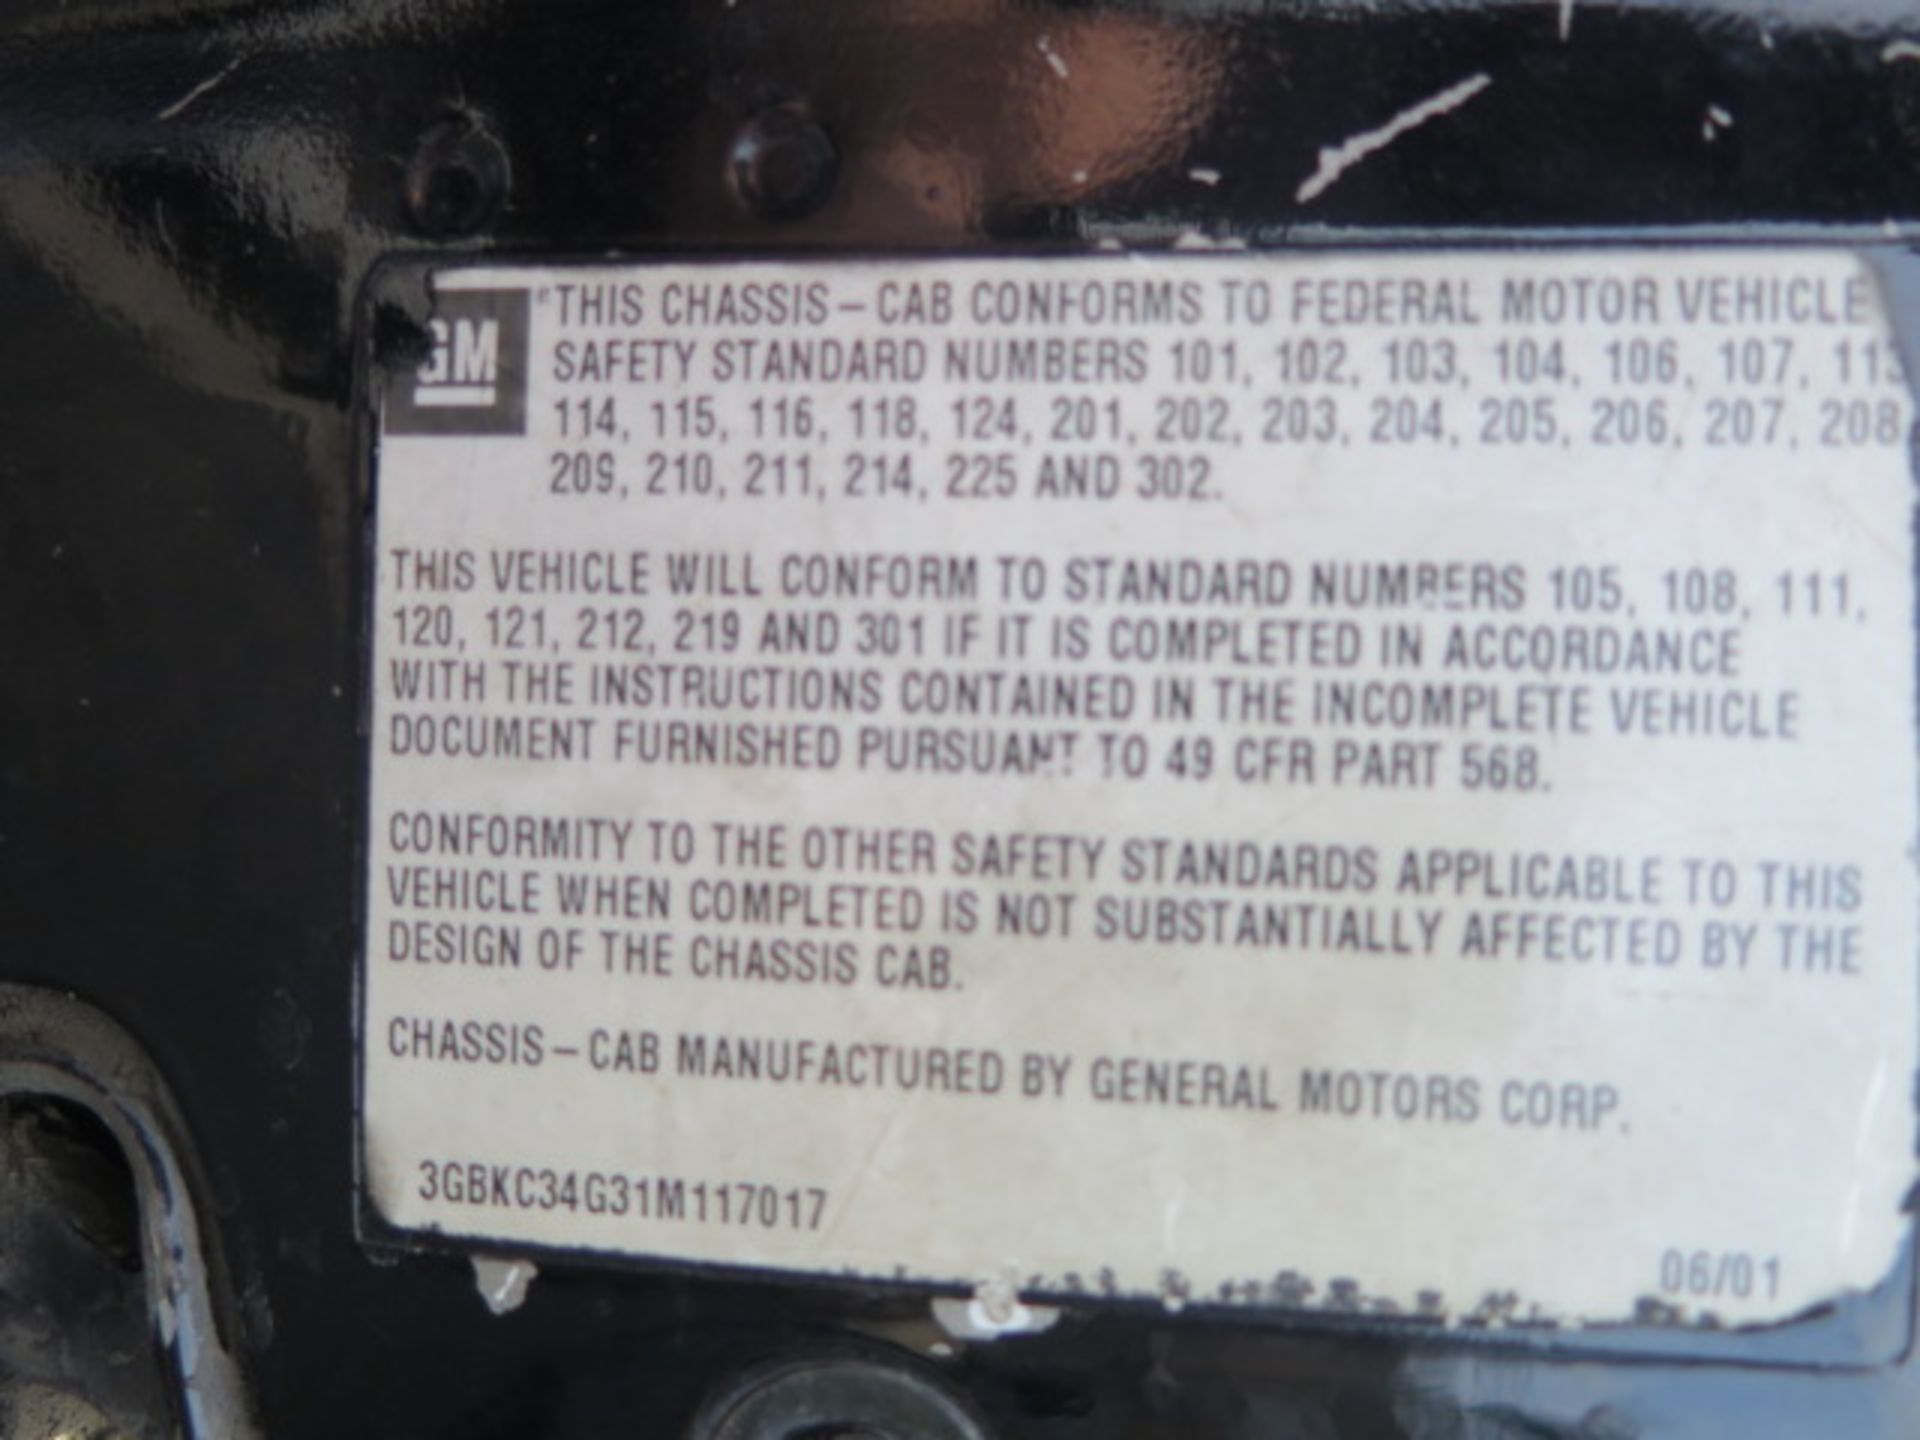 2001 Chevrolet Silverado 3500HD Welding Utility Truck Lisc# 6U26651 w/ 8.1L V8 Gas Engine, Automatic - Image 17 of 19